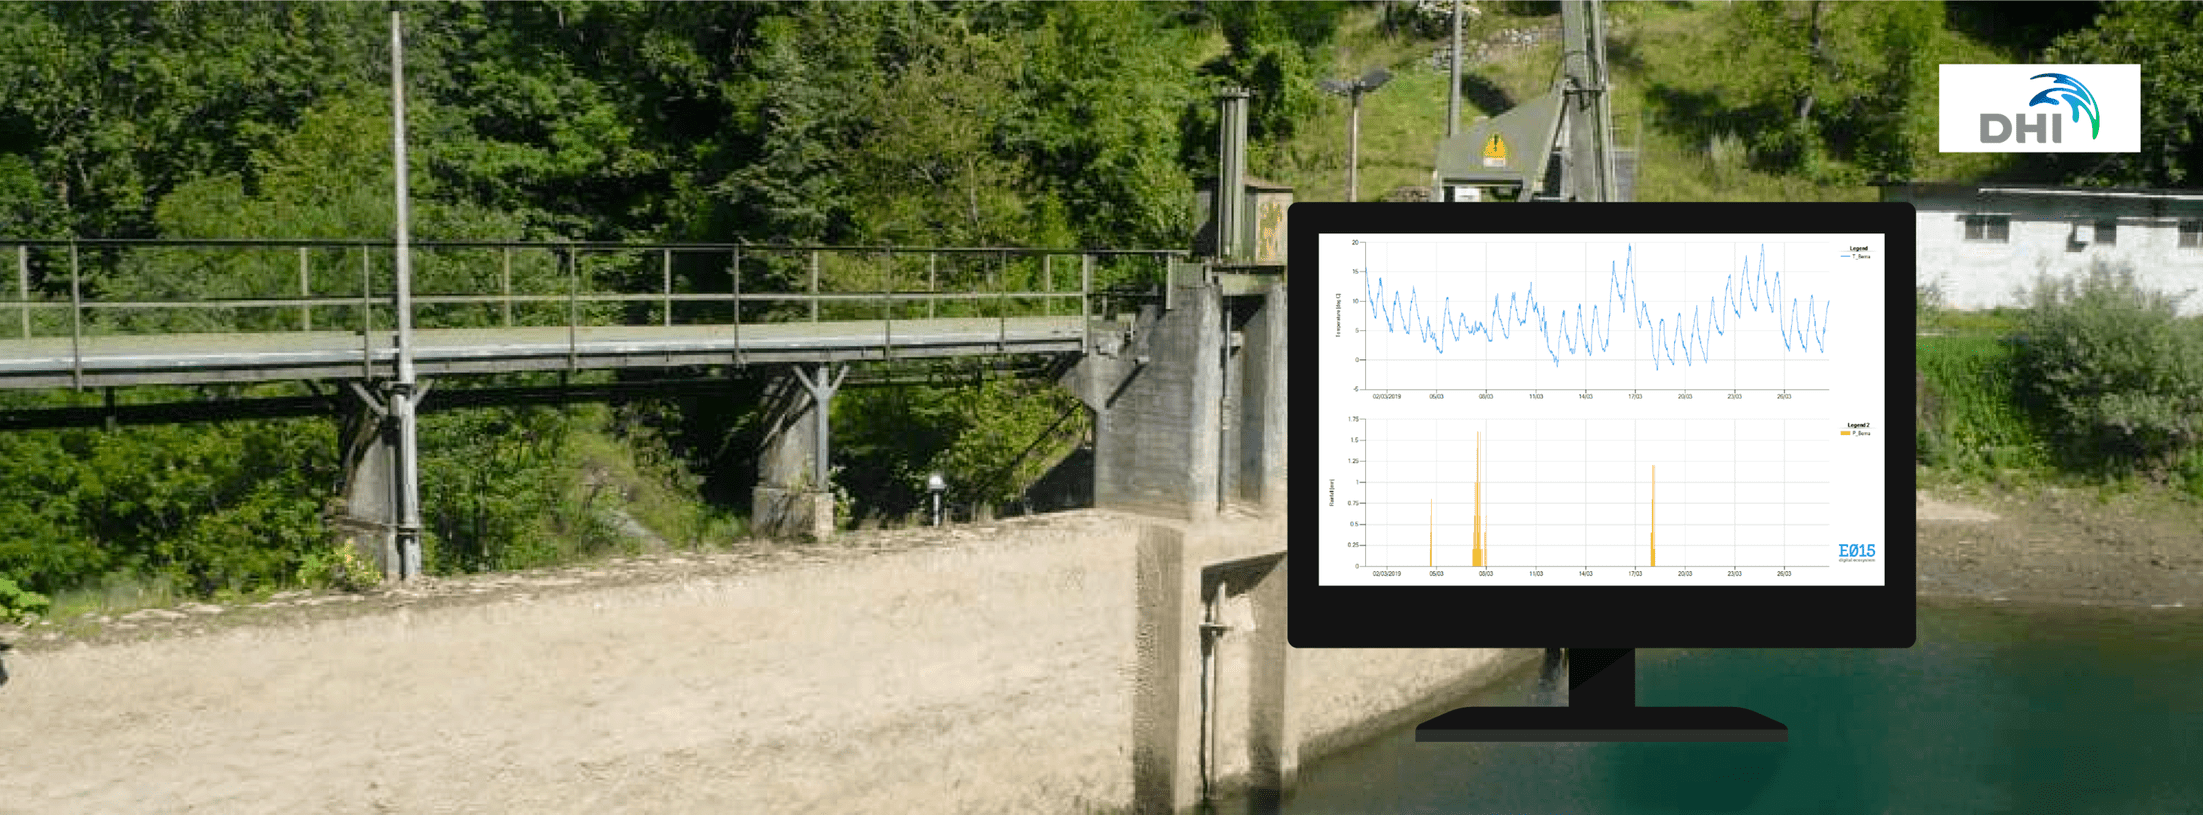 E015 a supporto del monitoraggio ambientale nella diga di Pagnona